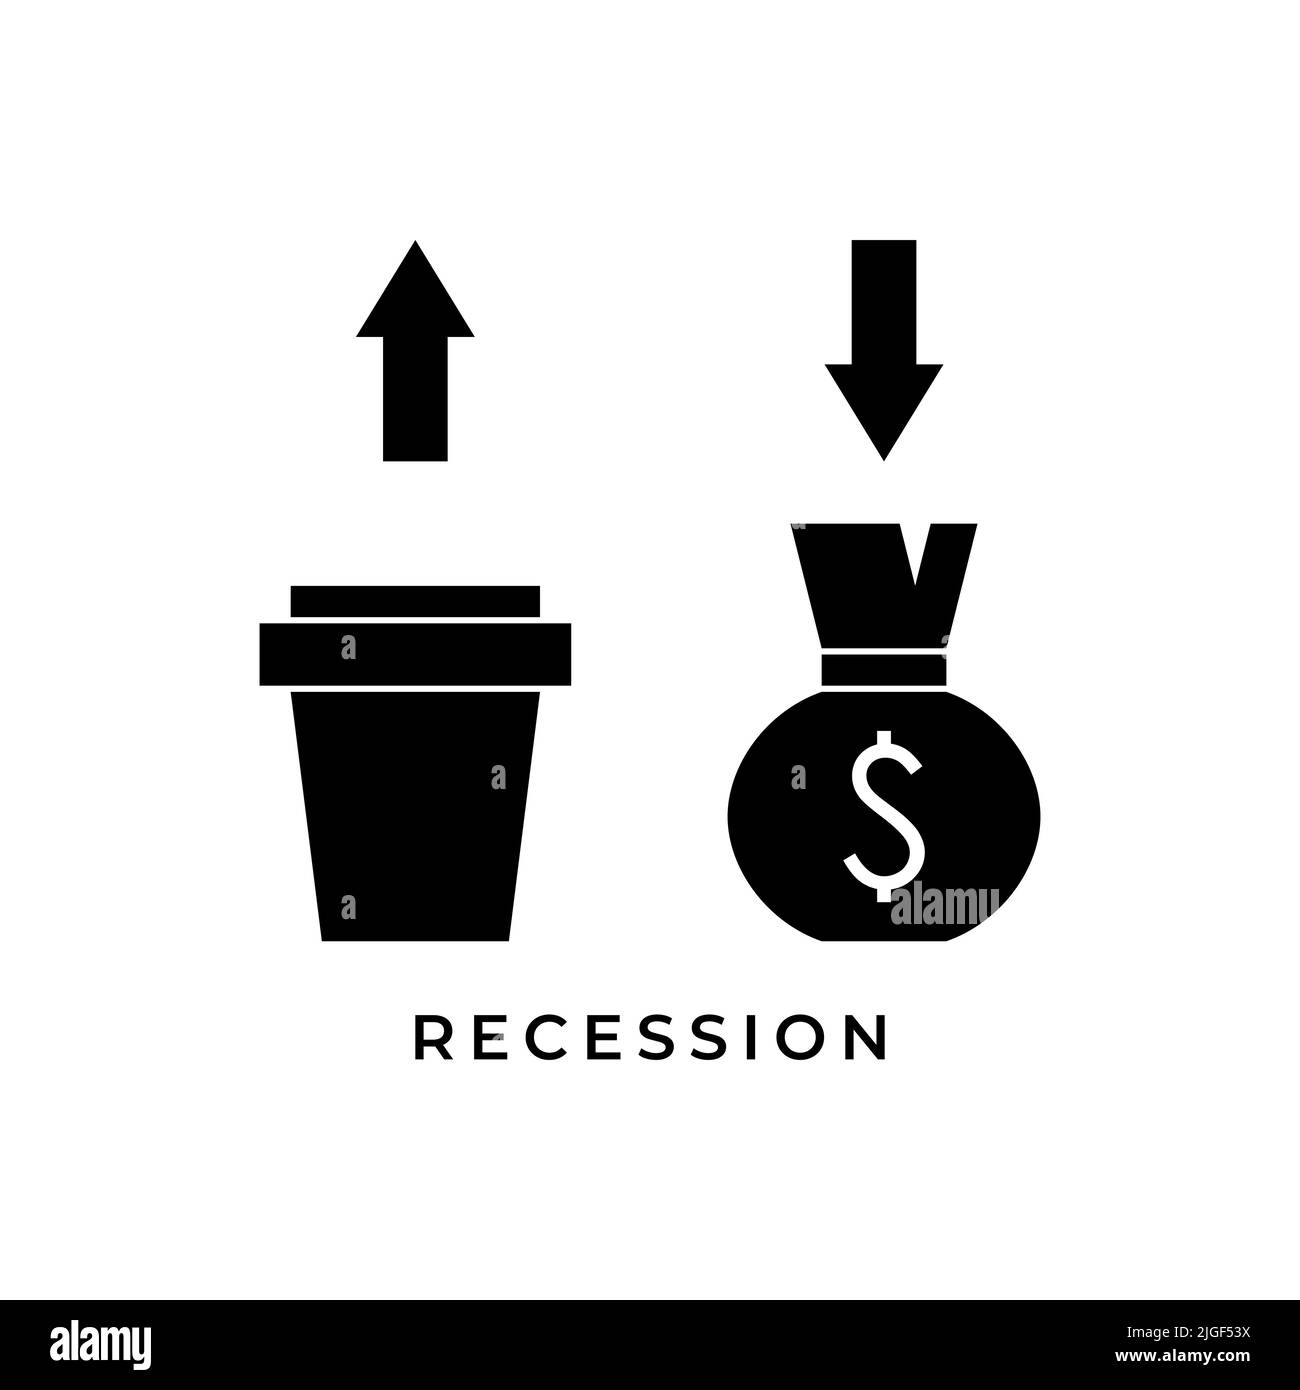 arrow up arrow down recession icon symbol design vector illustration. Stock Vector